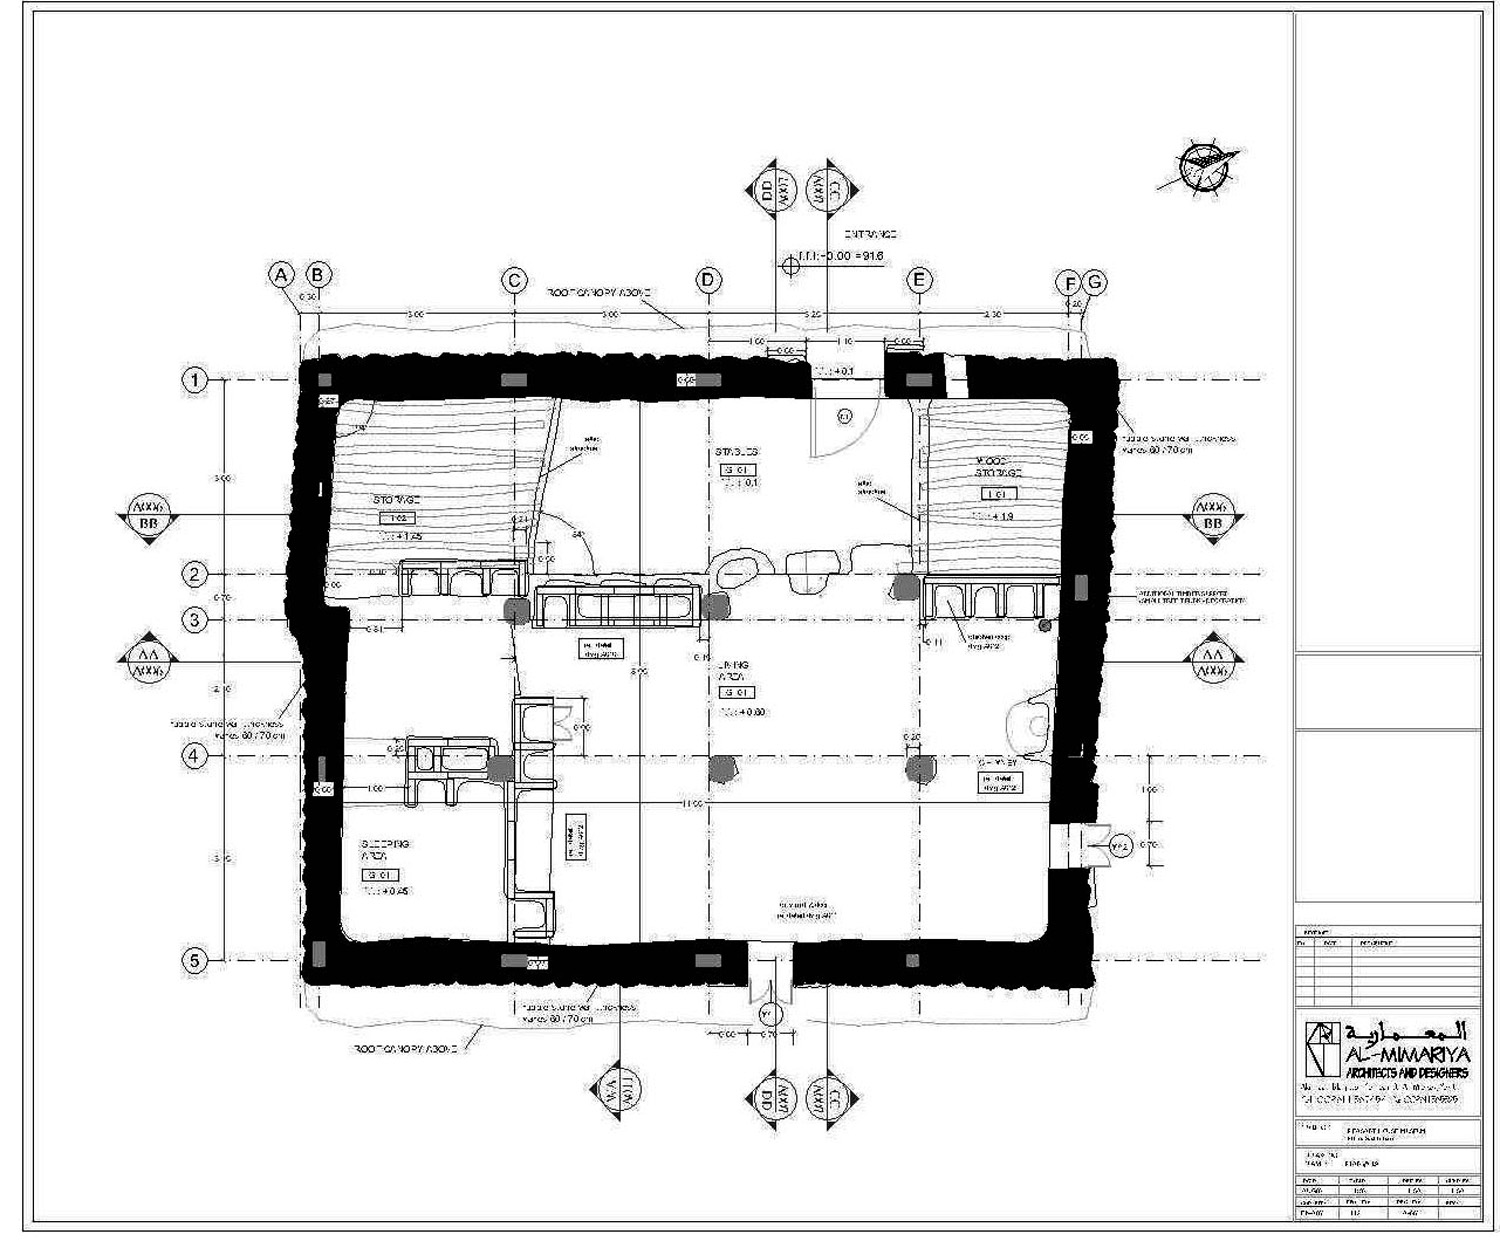 Ground floor plan




